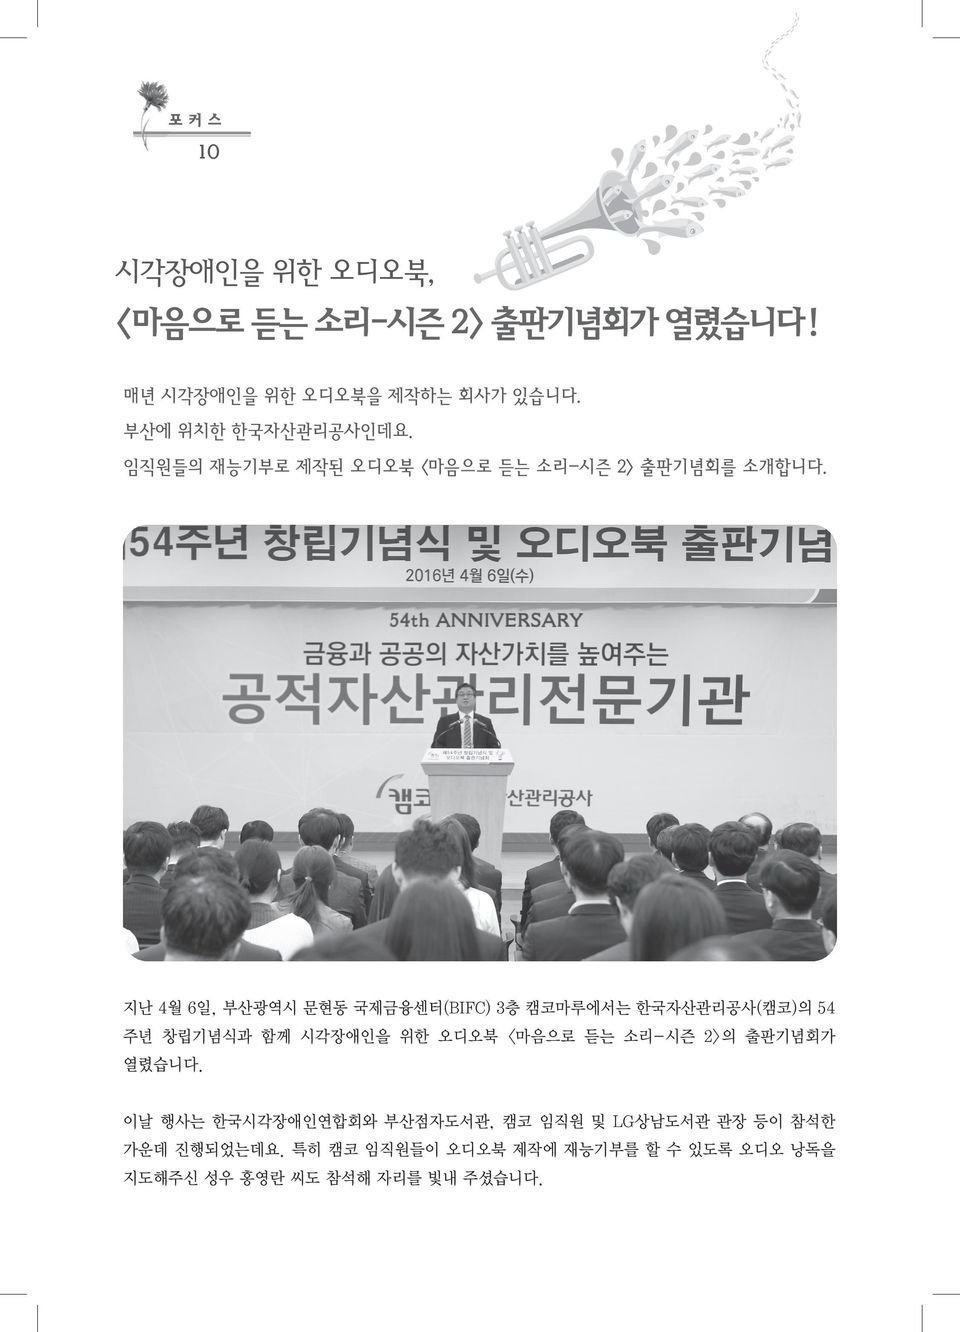 지난 4월 6일, 부산광역시 문현동 국제금융센터(BIFC) 3층 캠코마루에서는 한국자산관리공사(캠코)의 54 주년 창립기념식과 함께 시각장애인을 위한 오디오북 <마음으로 듣는 소리-시즌 2>의